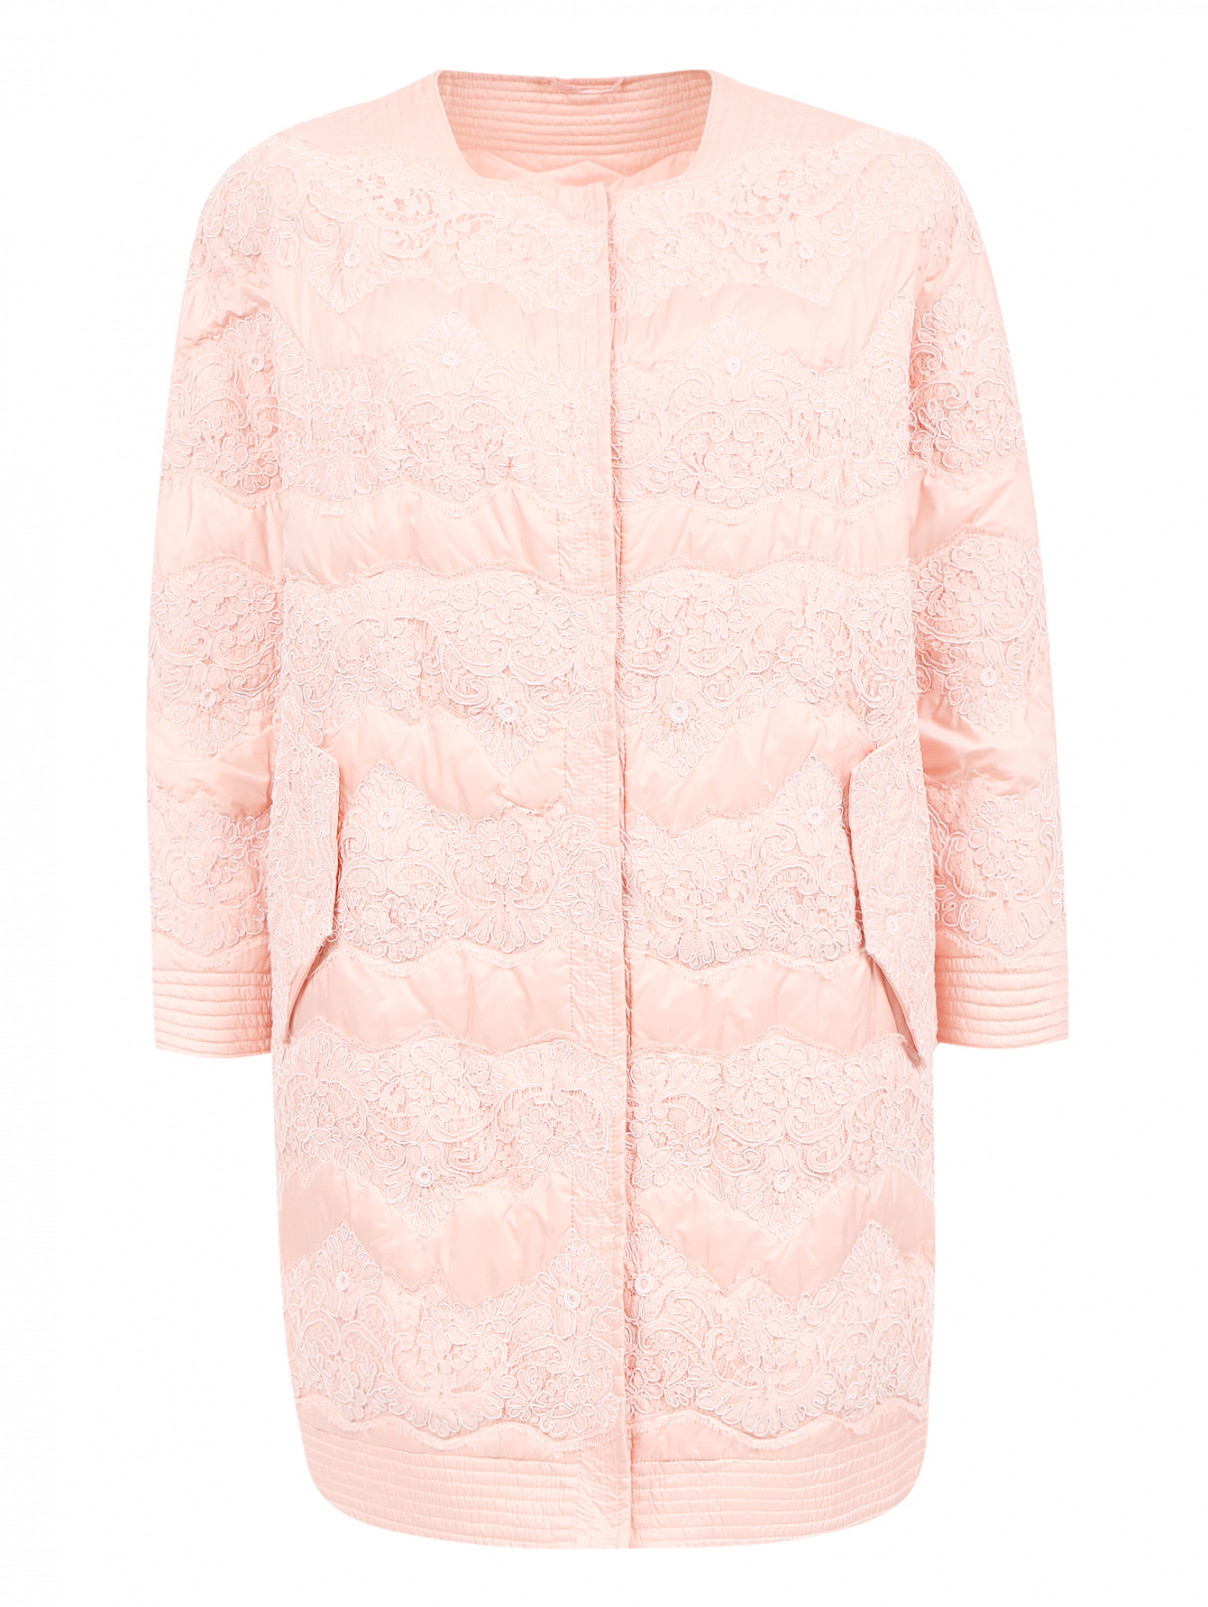 Стеганое пальто из полиэстера с кружевной отделкой Ermanno Scervino  –  Общий вид  – Цвет:  Розовый